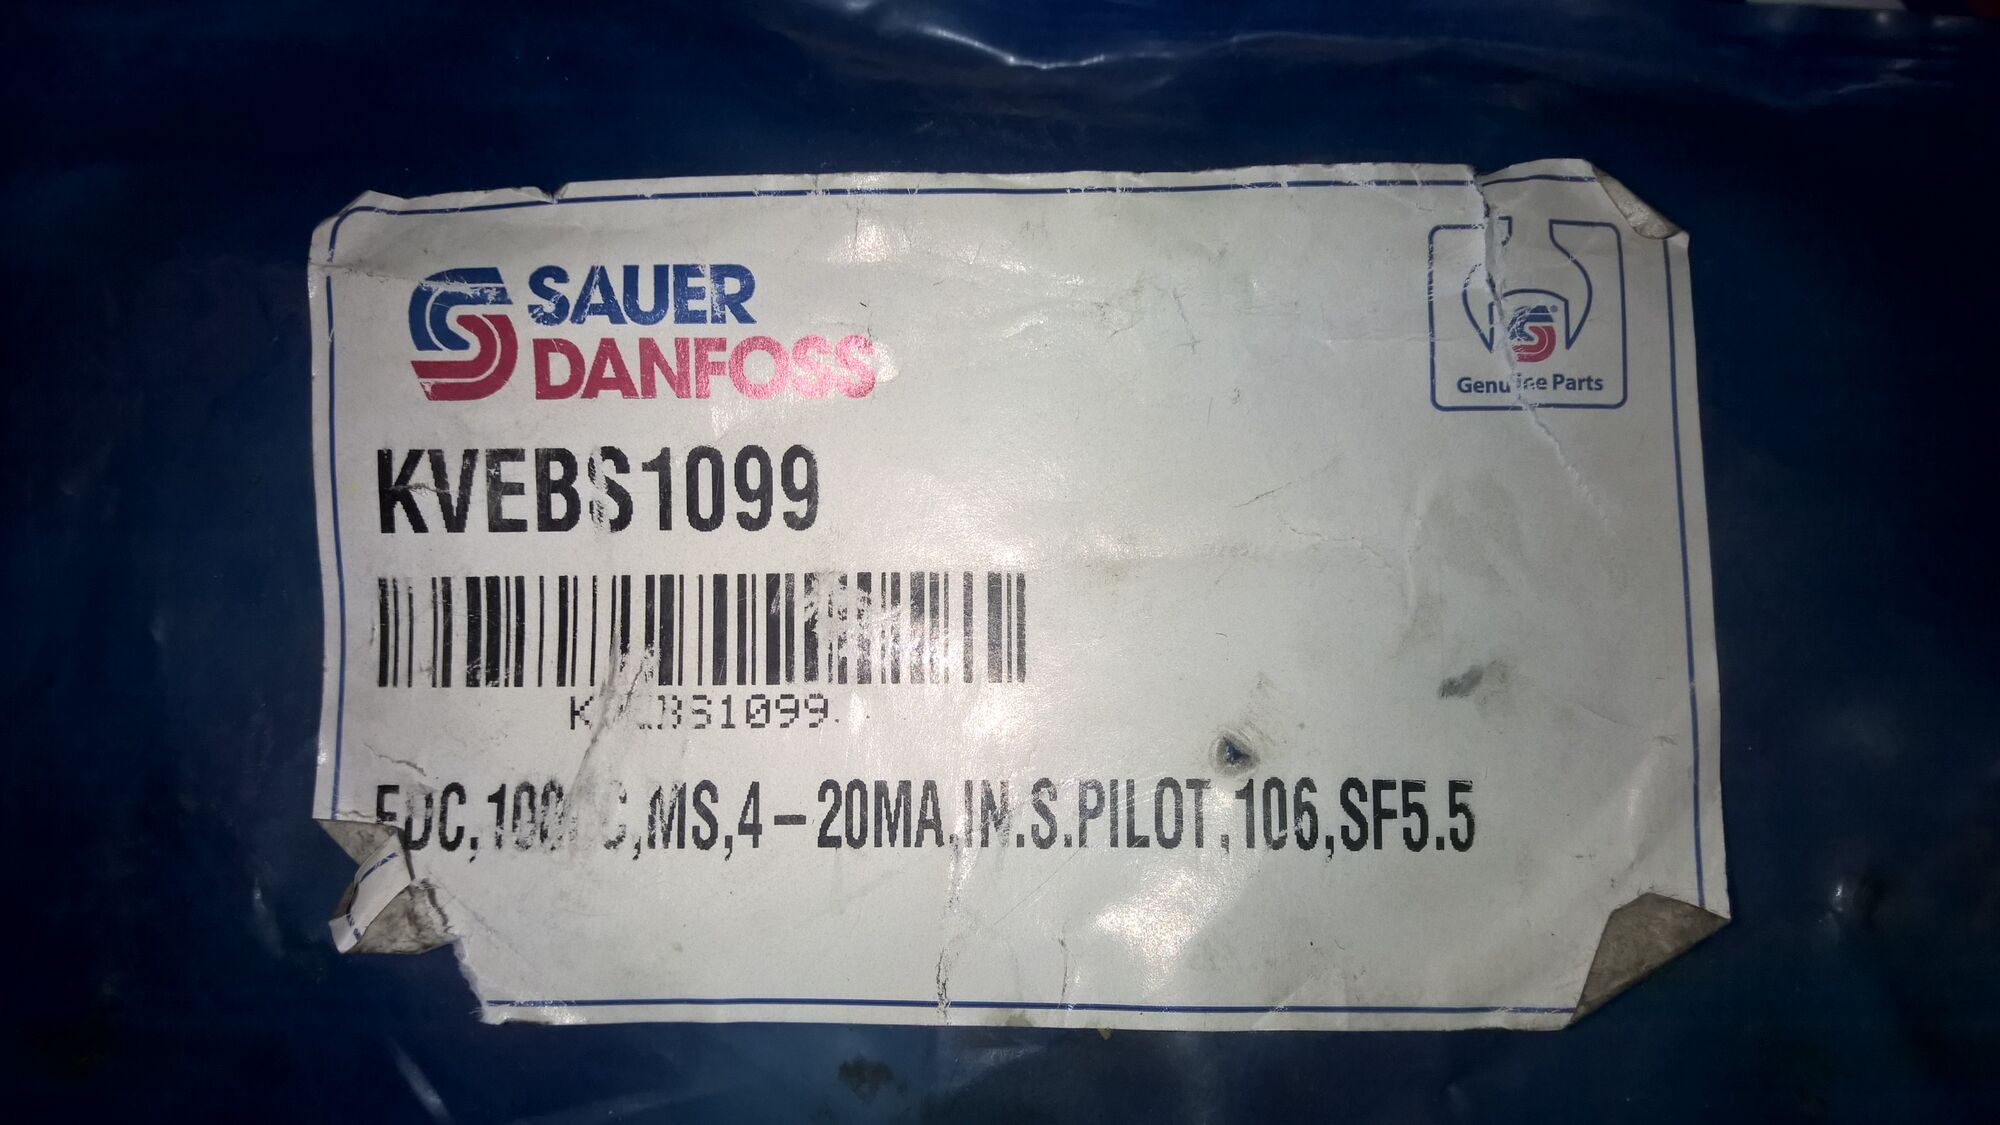 Клапан kvebs1099 управления гидронасосом 90PV100 Danfoss Power Solutions, Зауэр Данфосс. 16